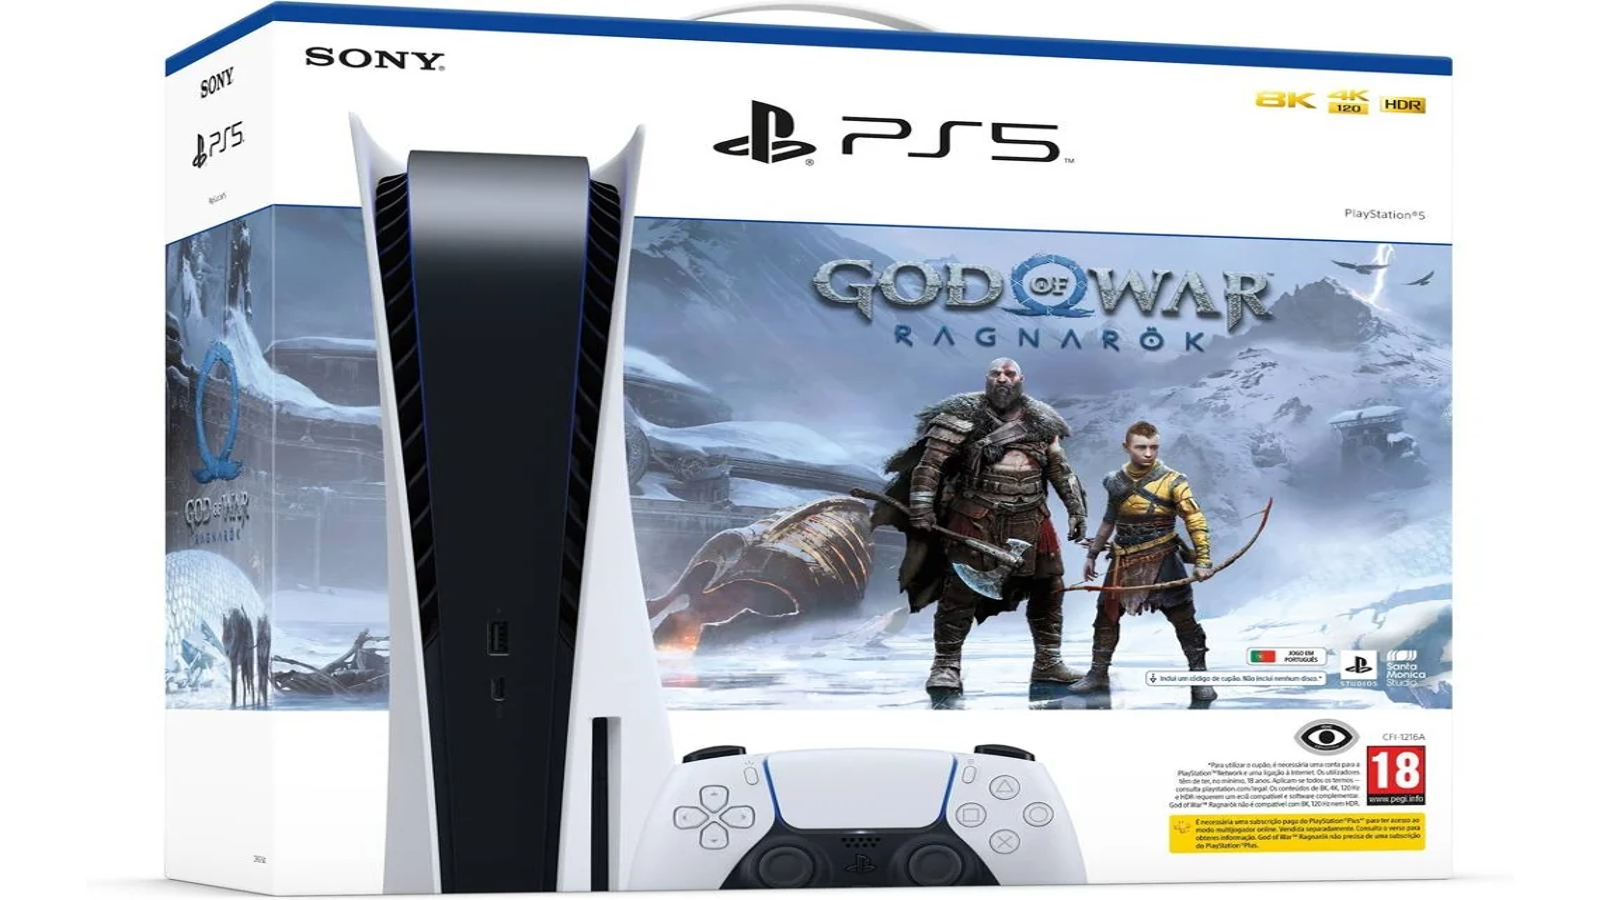 God of War, FIFA 23 e PS Plus estão mais baratos no PS4 e PS5; veja preço